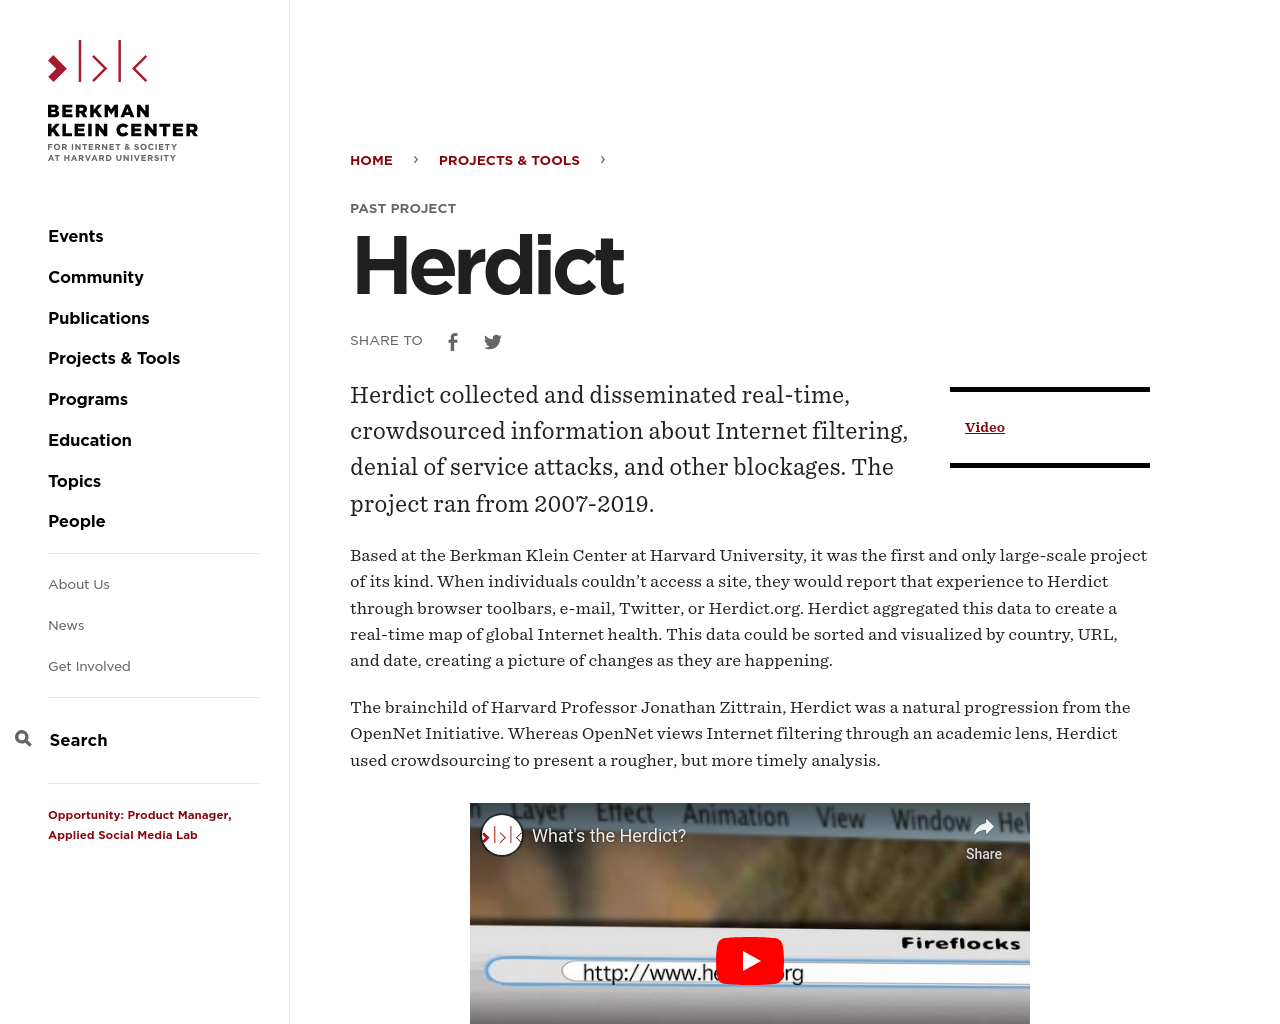 herdict.org